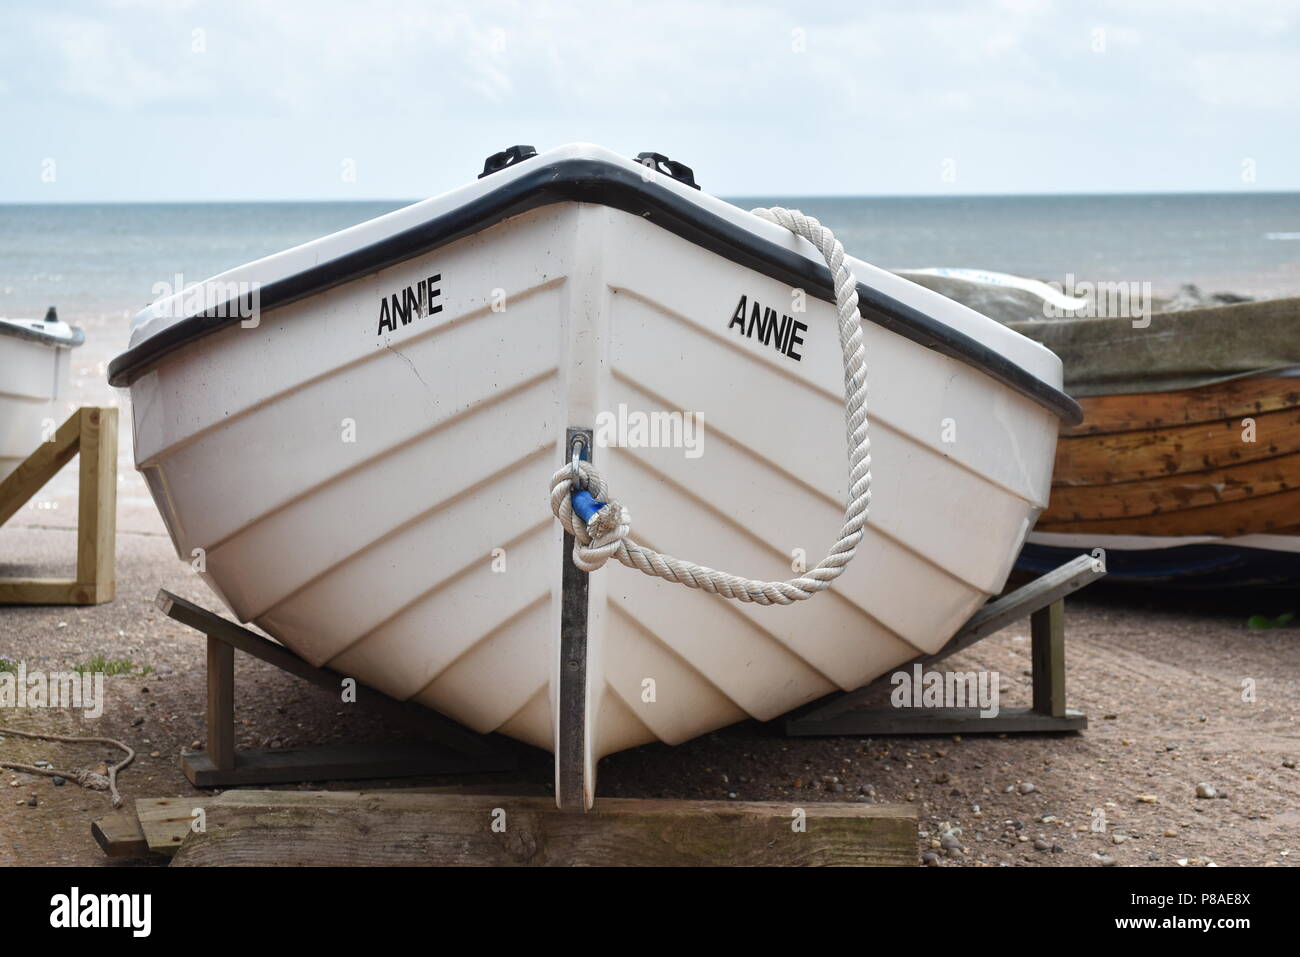 La proue d'un petit bateau blanc nommé Annie reposant sur des supports près de la rive de la mer avec la mer en arrière-plan à Sidmouth, Devon , Angleterre Banque D'Images